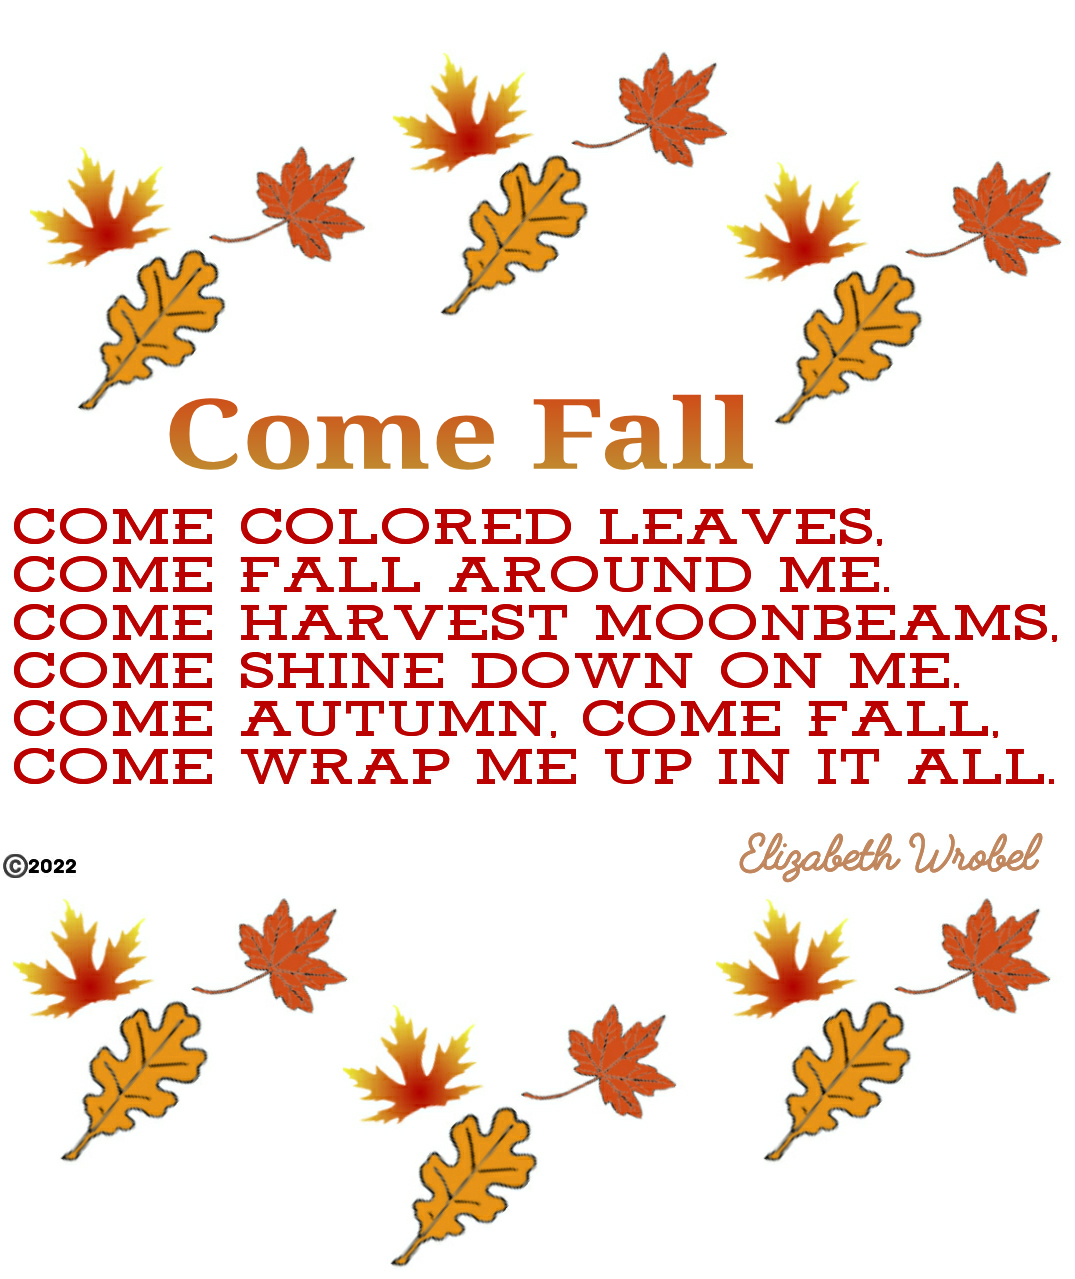 Come Fall an autumn rhyme by Elizabeth Wrobel